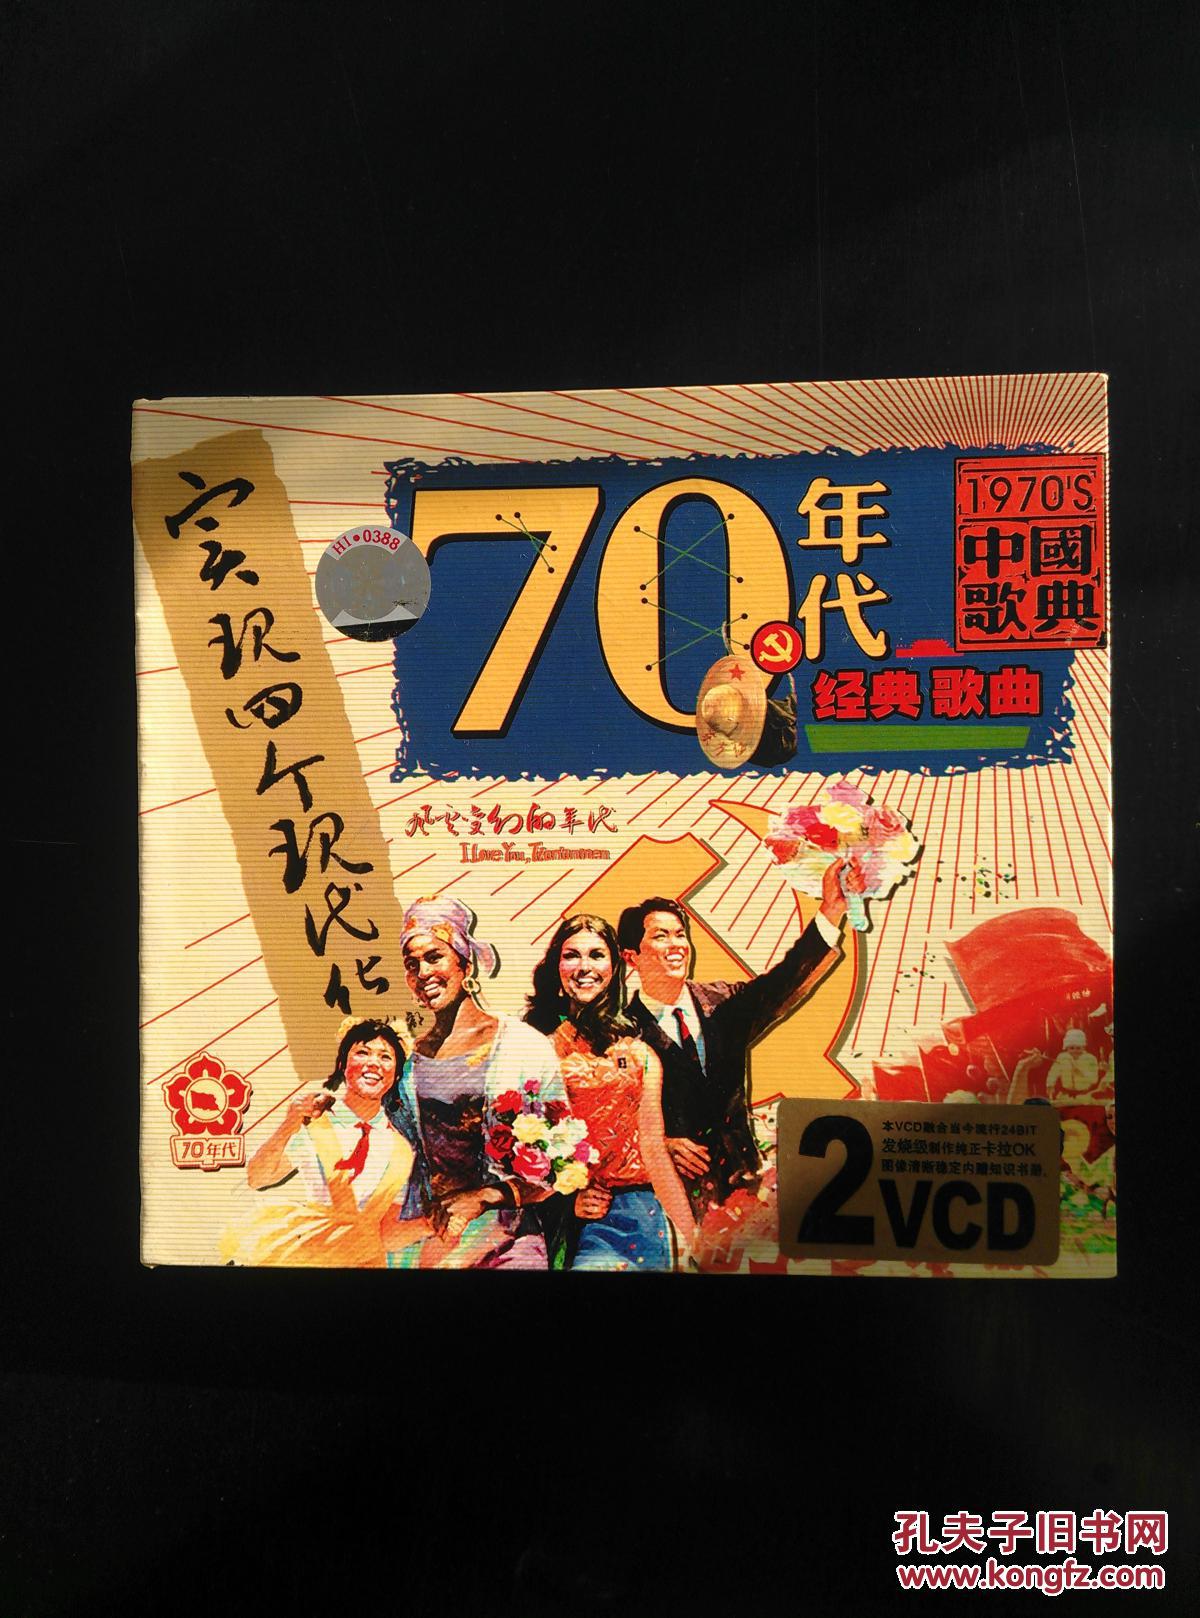 1970年代中国歌典 70年代经典歌曲 VCD光盘